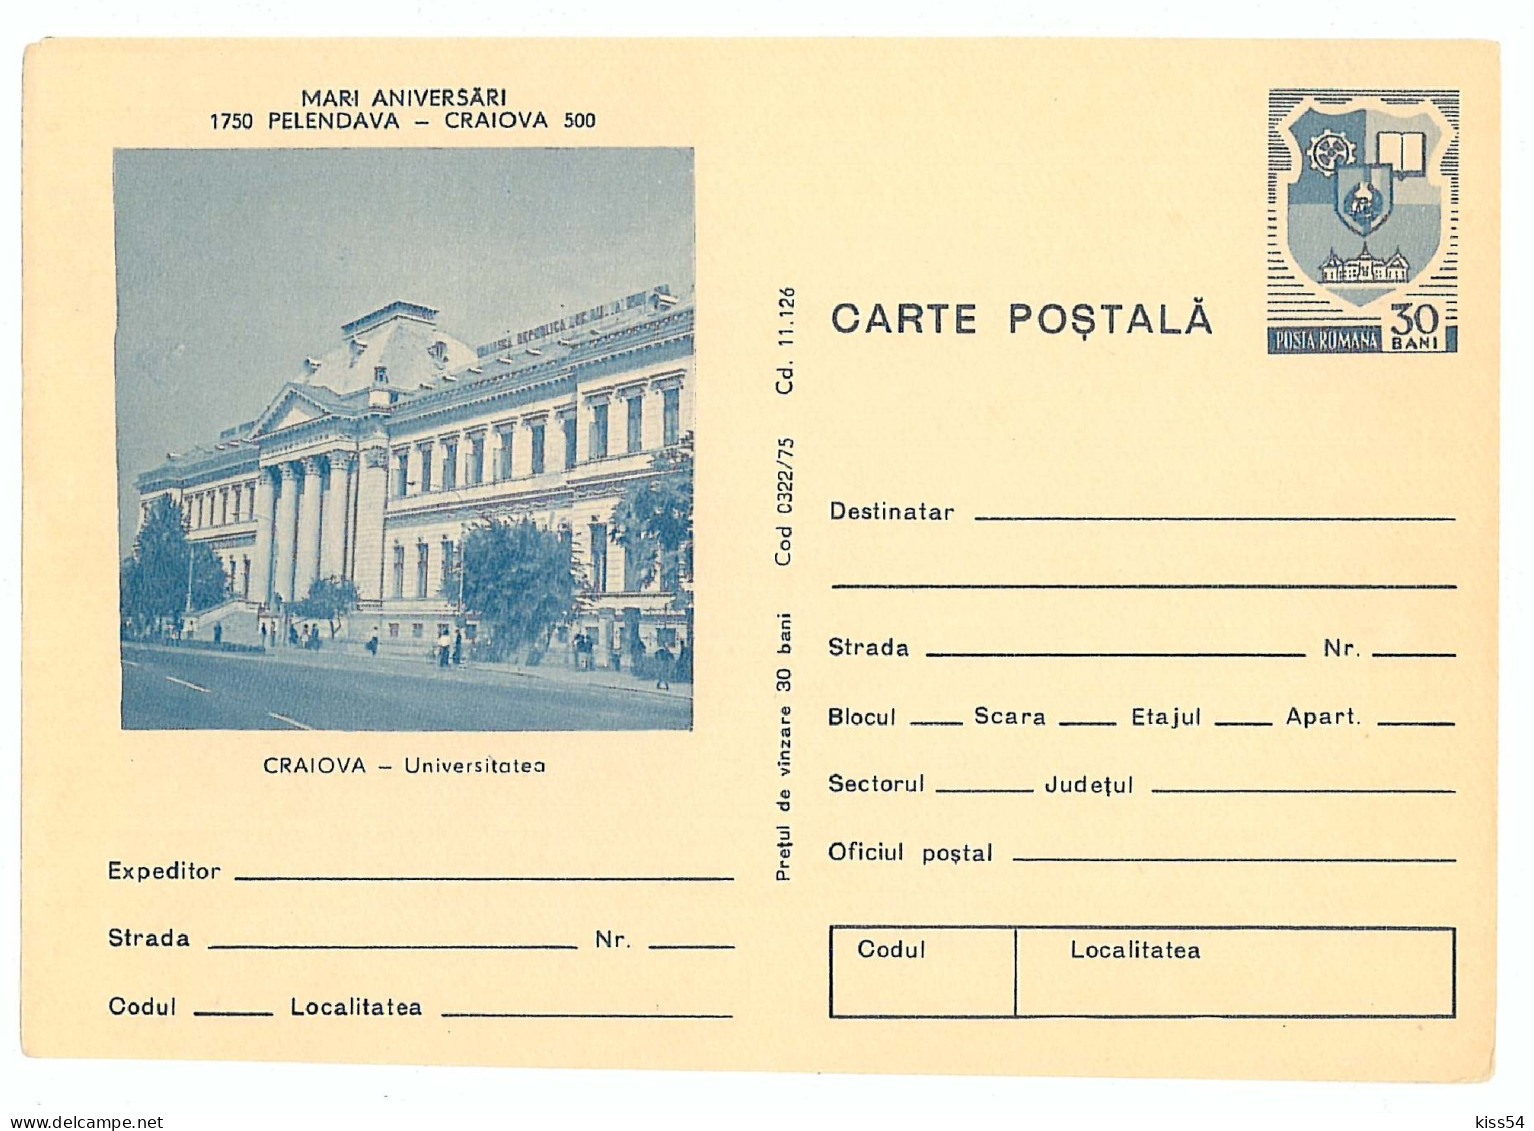 IP 75 - 322 CRAIOVA, University - Stationery - Unused - 1975 - Postal Stationery